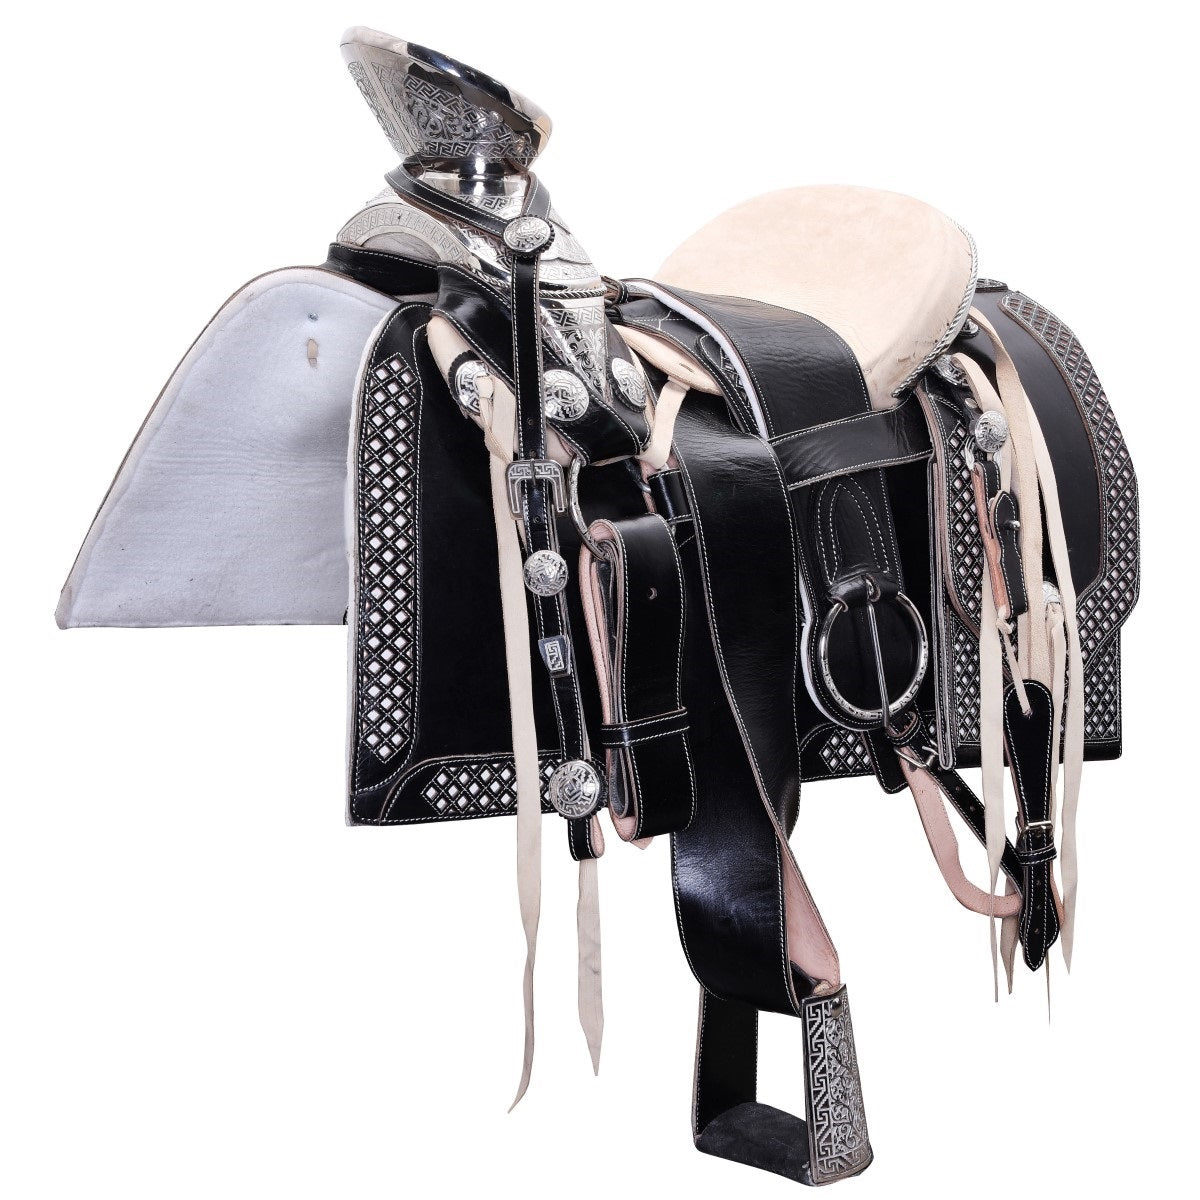 Silla de Montar para Caballo TM-WD1057-1027 Black- Horse Saddle